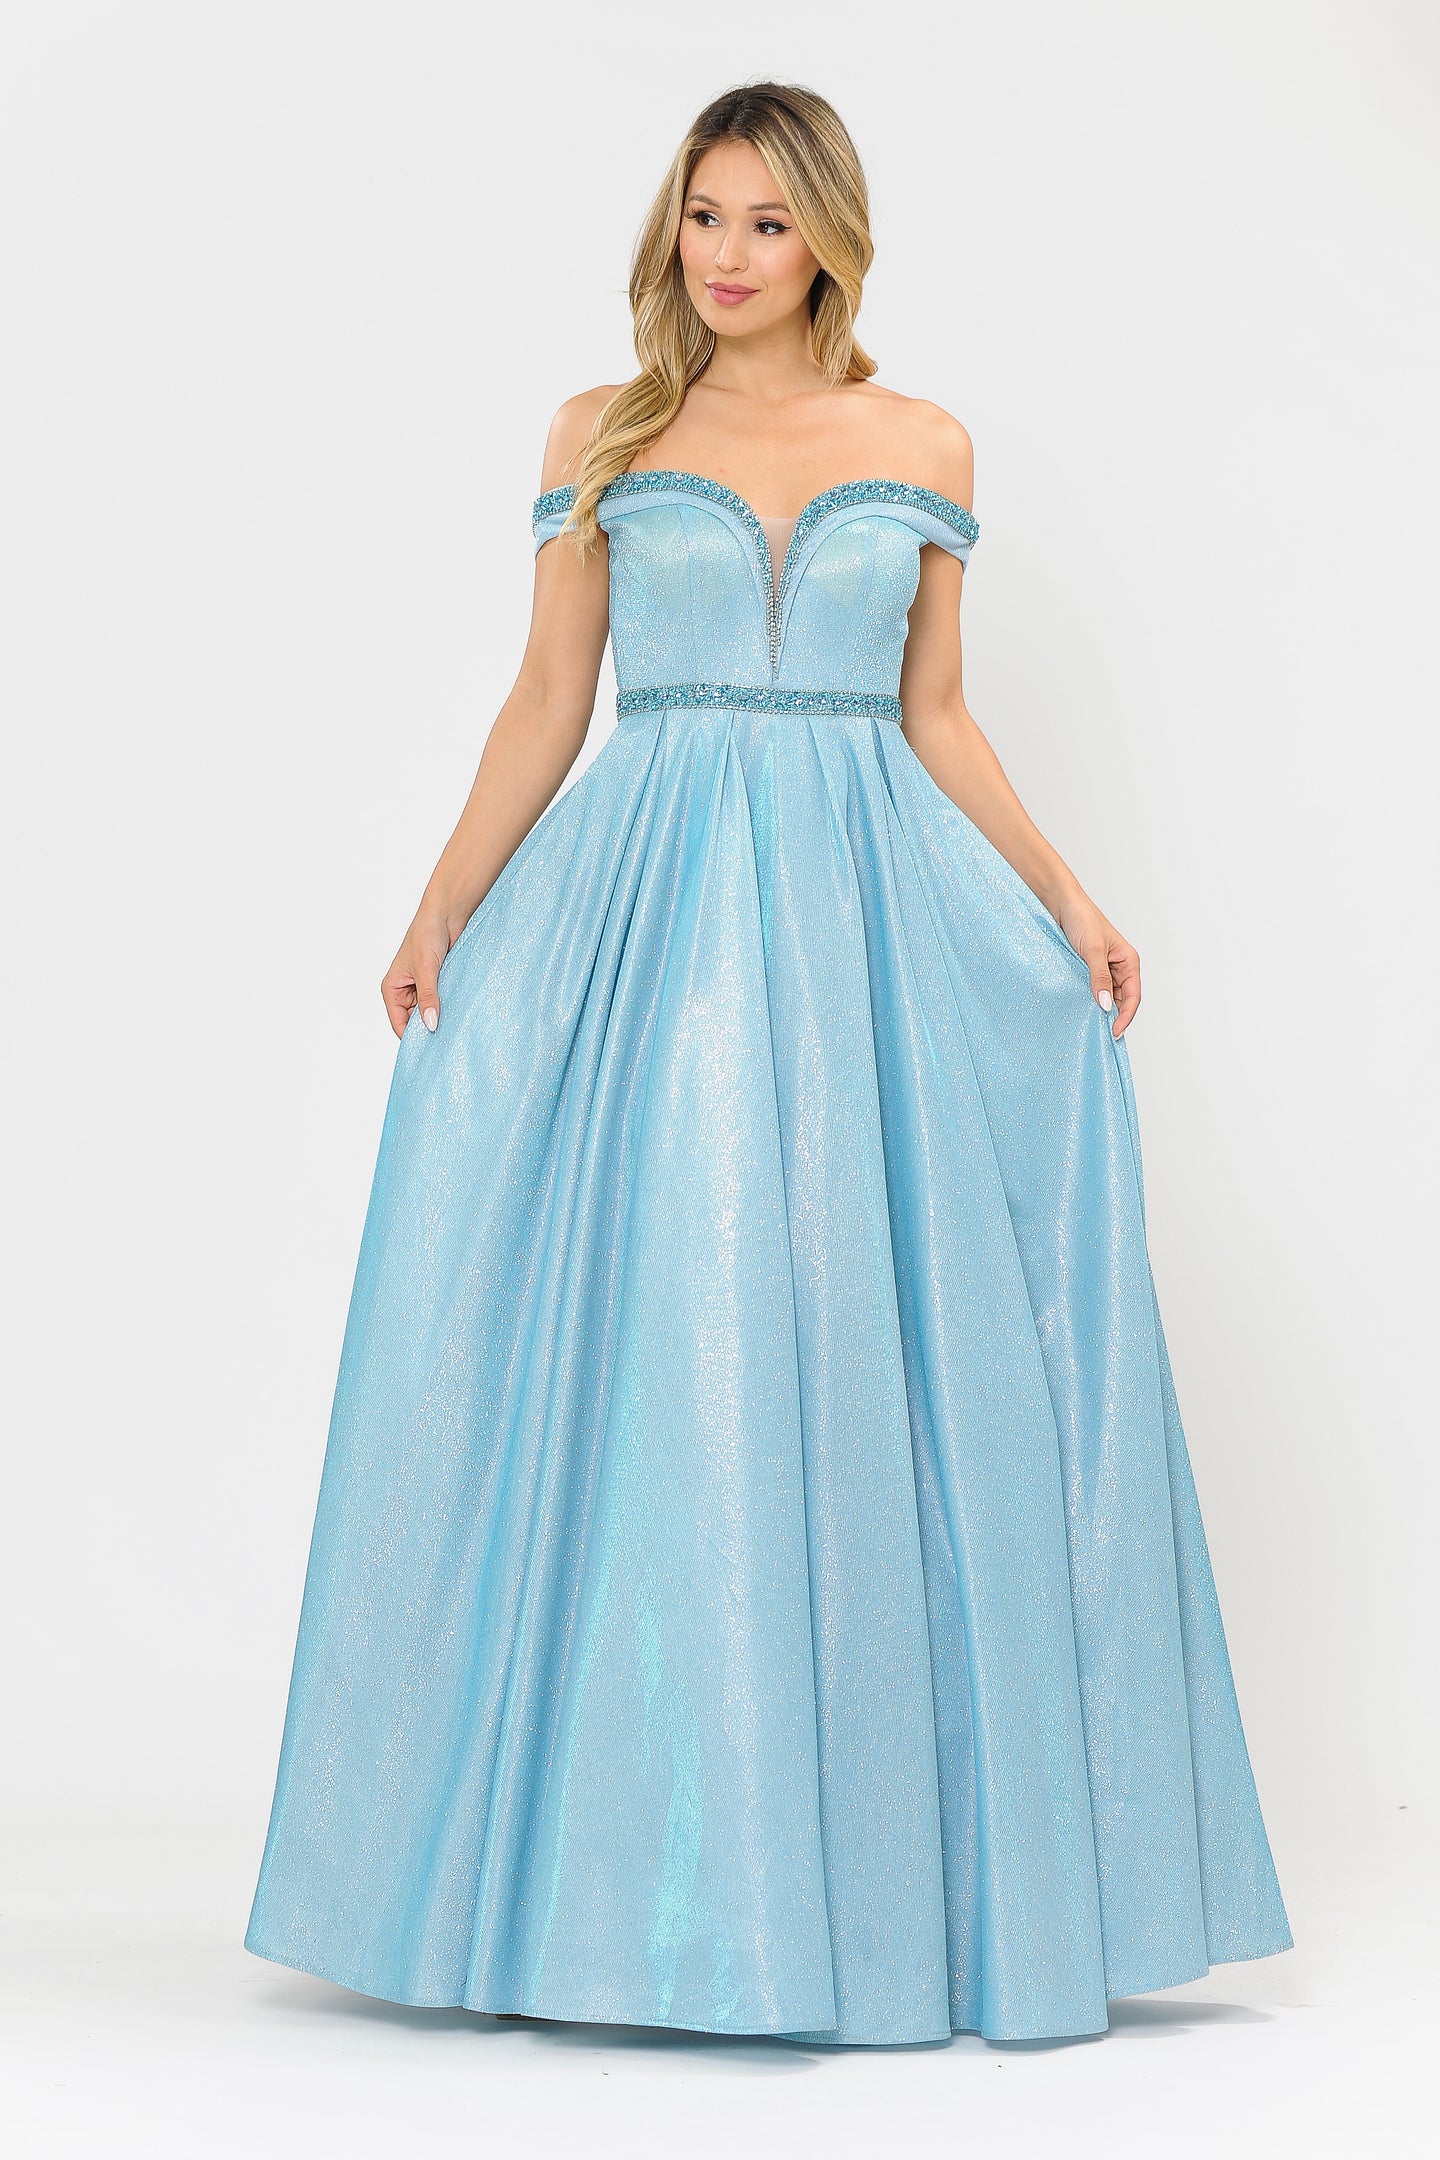 La Merchandise LAY8664 Sweetheart Long Formal A-Line Glitter Prom Gown - BLUE - LA Merchandise